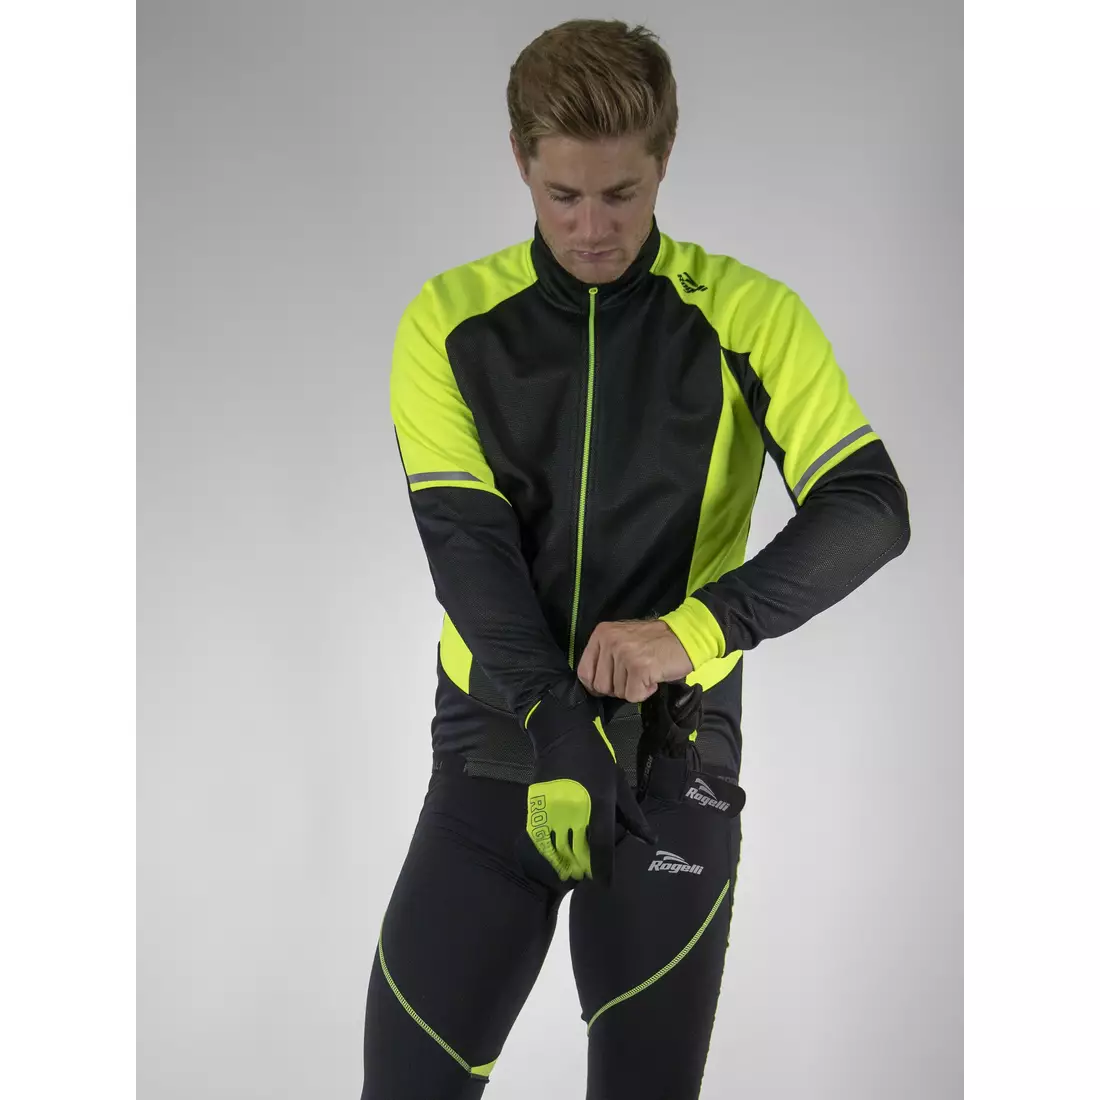 ROGELLI UBALDO 3.0 zimní cyklistická bunda, černo-fluor